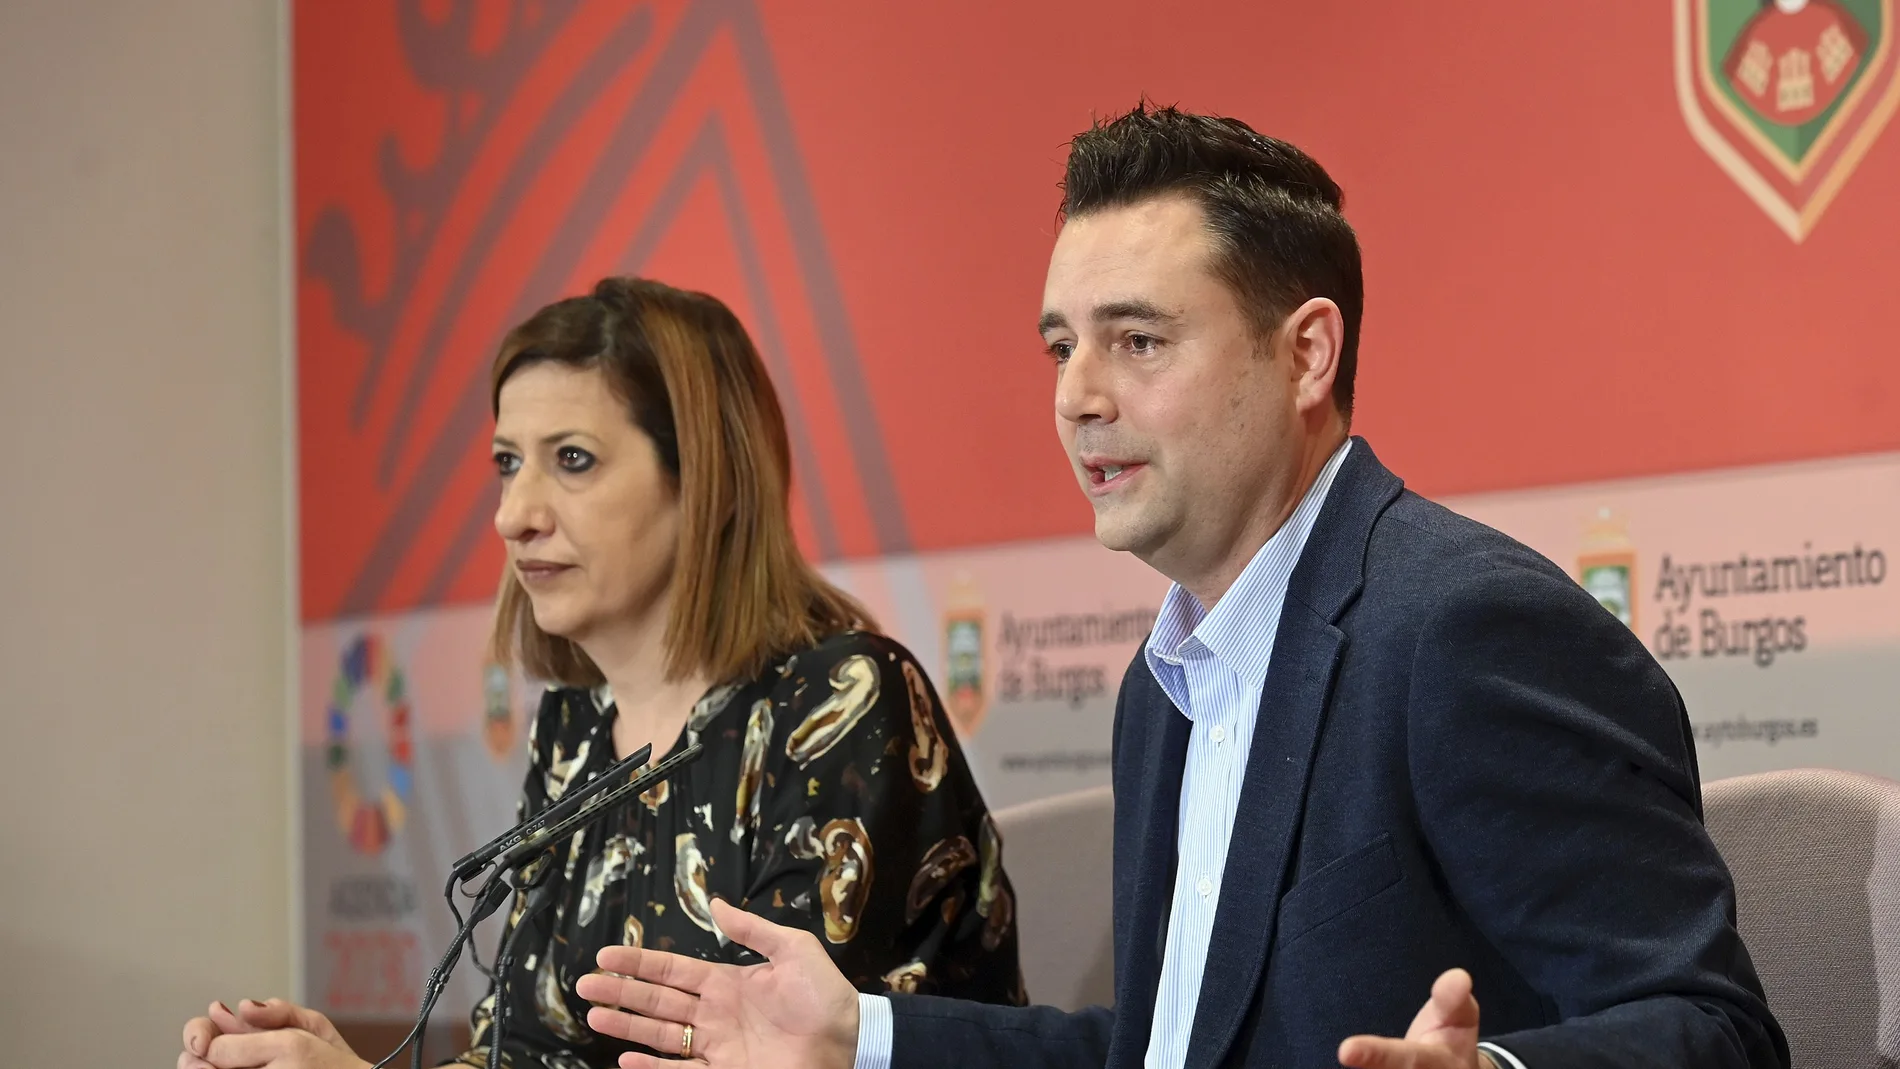 El alcalde de Burgos, Daniel de la Rosa, presenta el balance del Grupo Municipal Socialista del año 2022, acompañado de la portavoz municipal Nuria Barrio